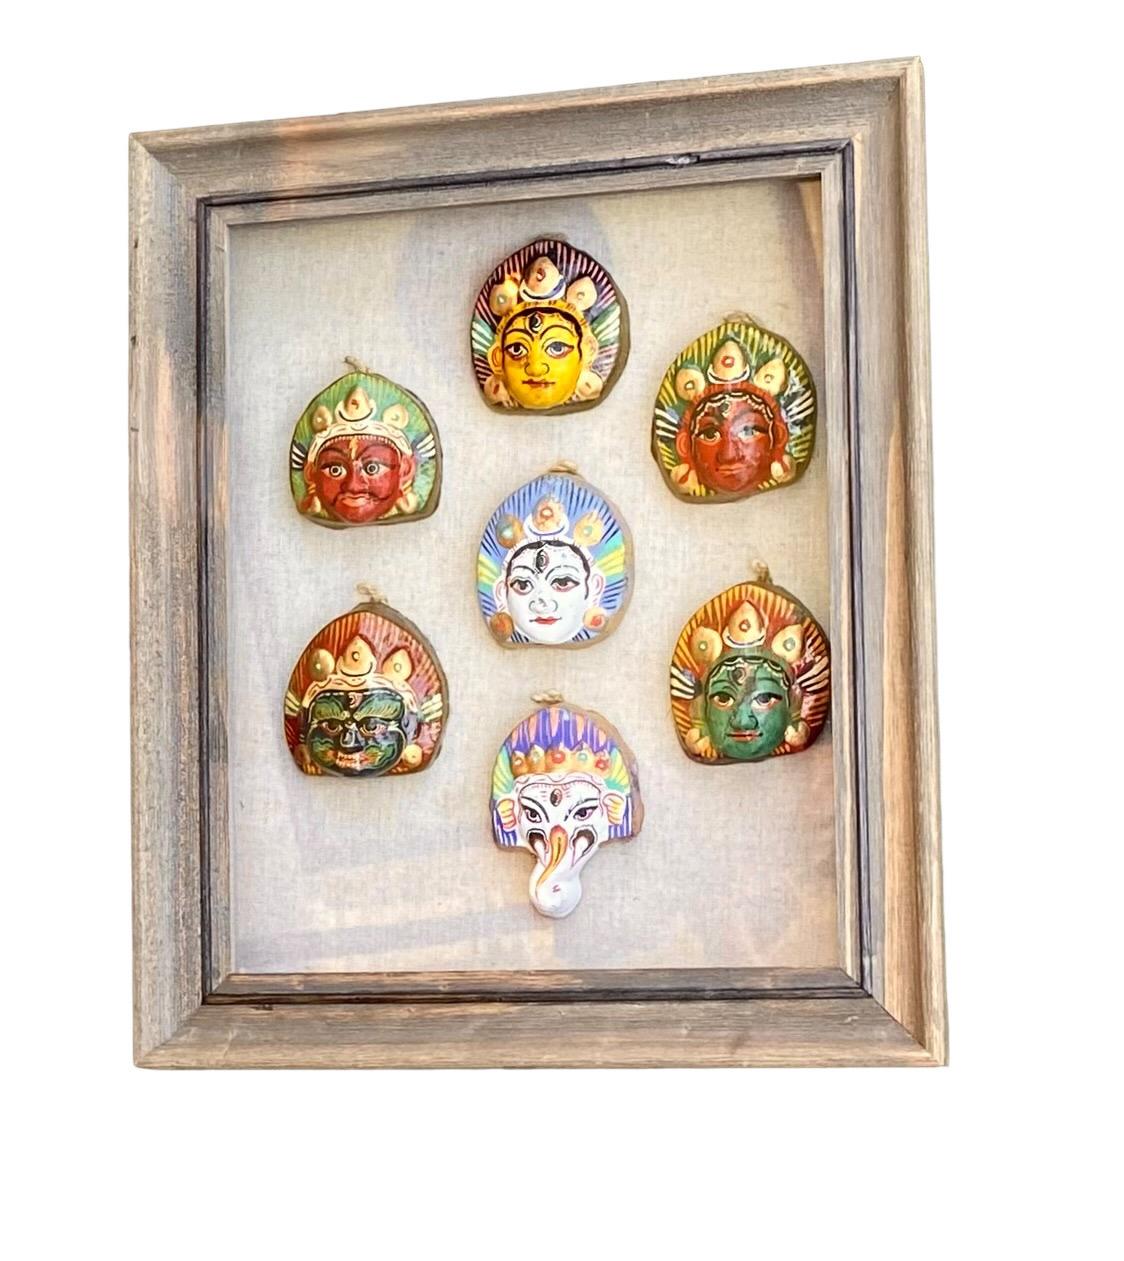 Vintage mid century fait à la main et peint à la main shiva sculptures du troisième œil encadré dans une belle boîte d'ombre. Cette pièce présente sept visages de Shiva faits et peints à la main, avec des troisièmes yeux distincts. Elles sont